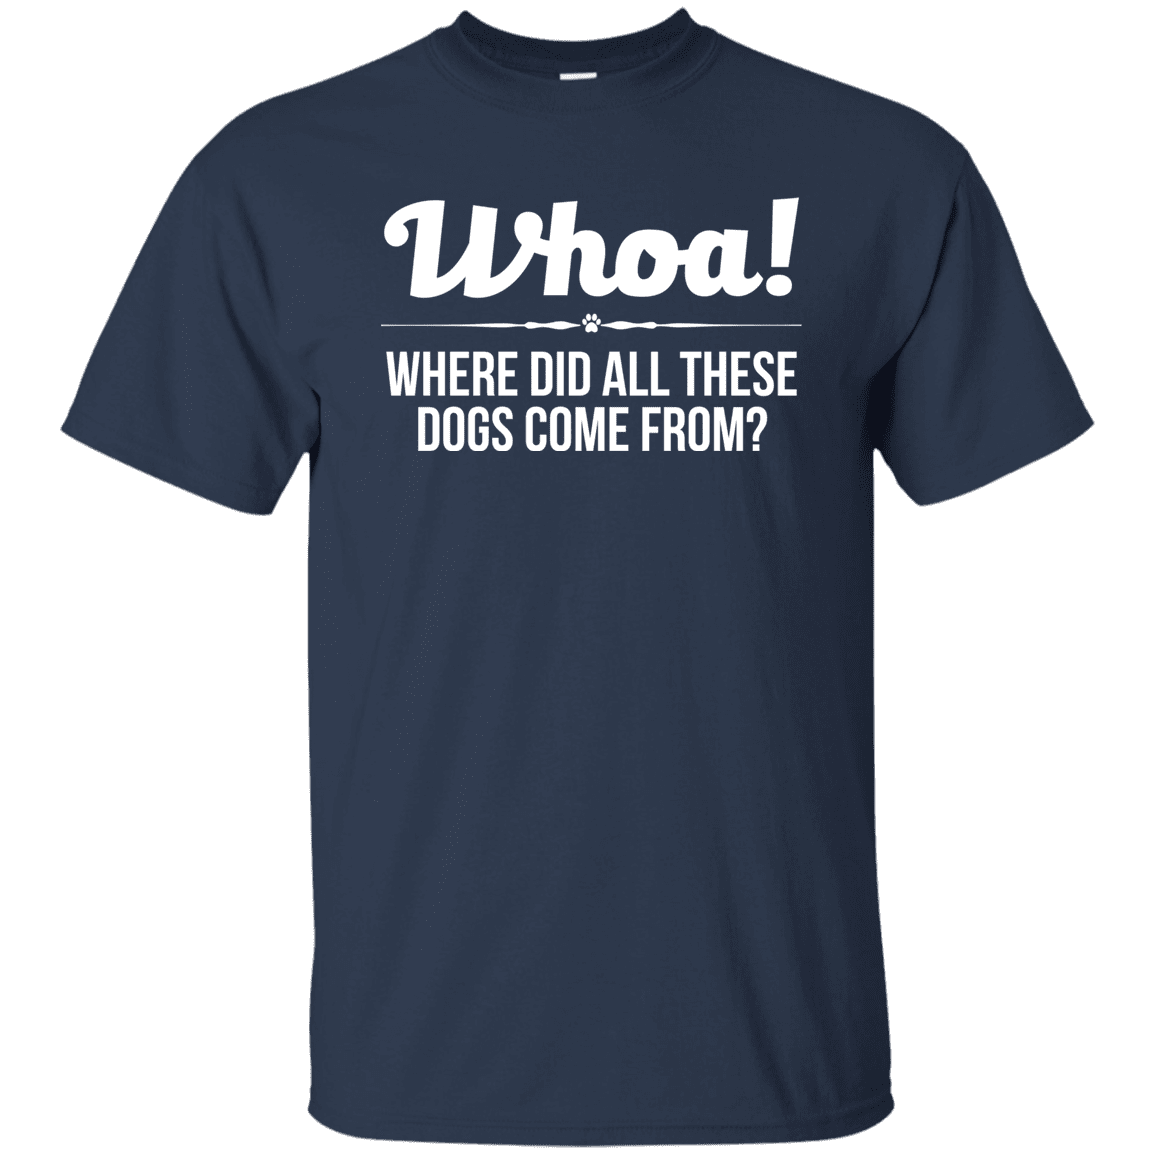 Whoa! - T Shirt.